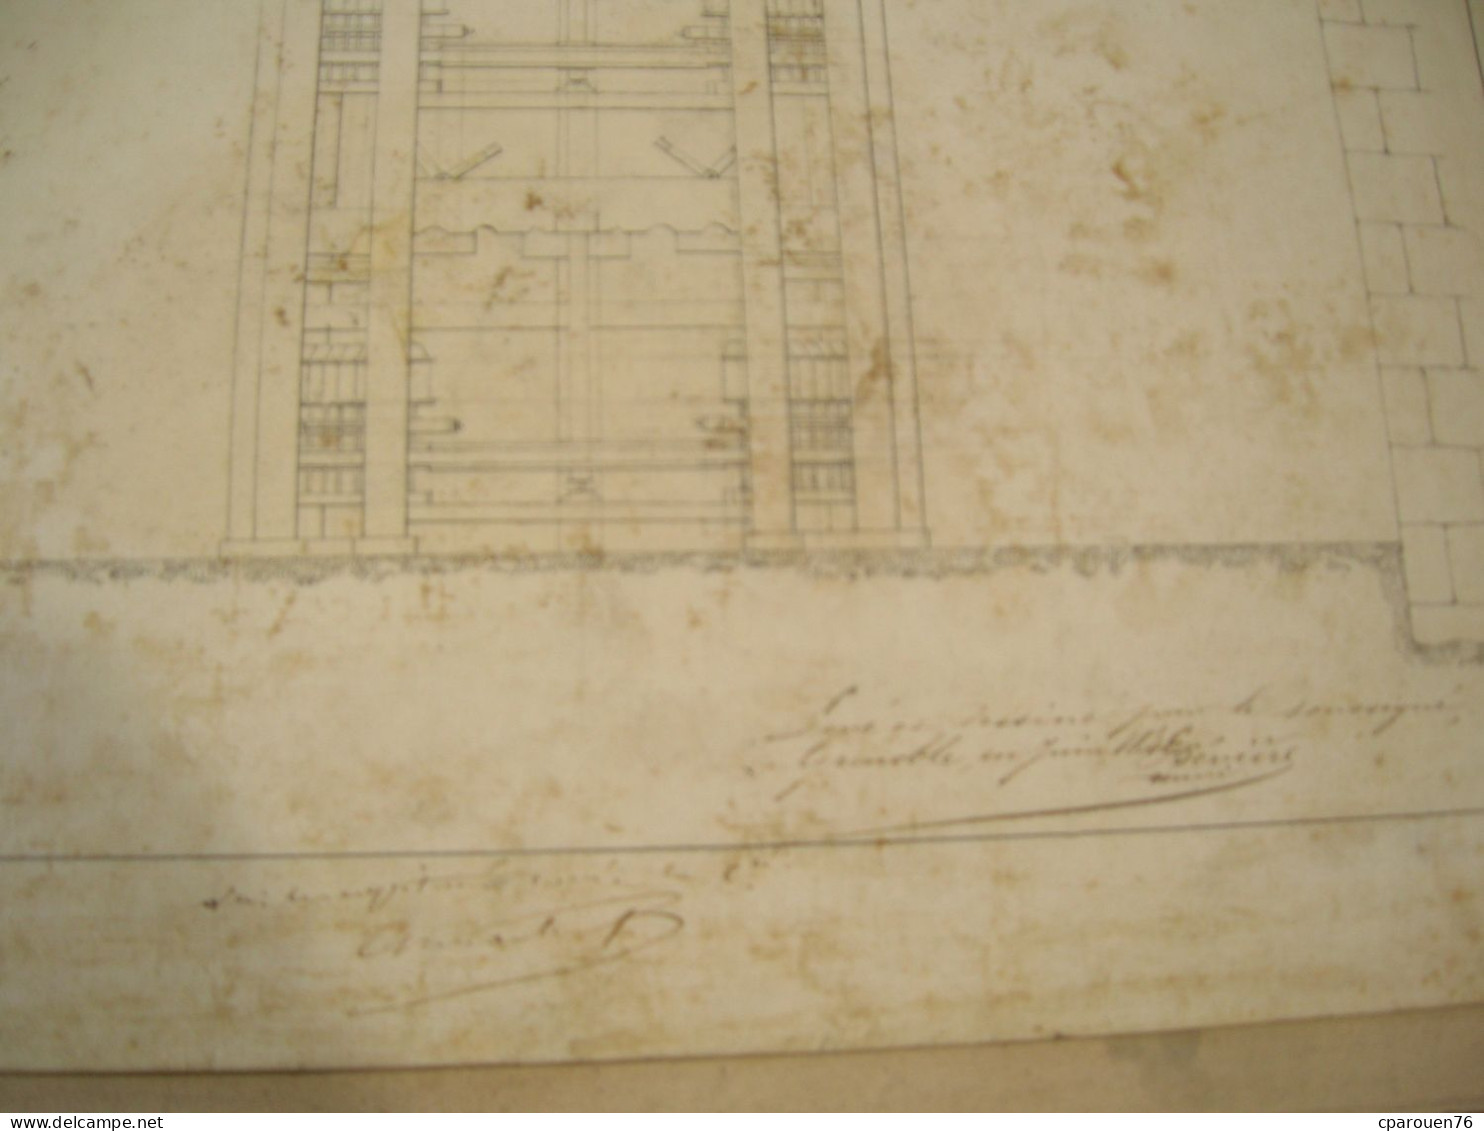 Plan Dessiné Encre Moulin à Soie Signé Bévière  Grenoble 1846 Plus Cahier D Architecture Manuscrit Et Couleurs - Maschinen